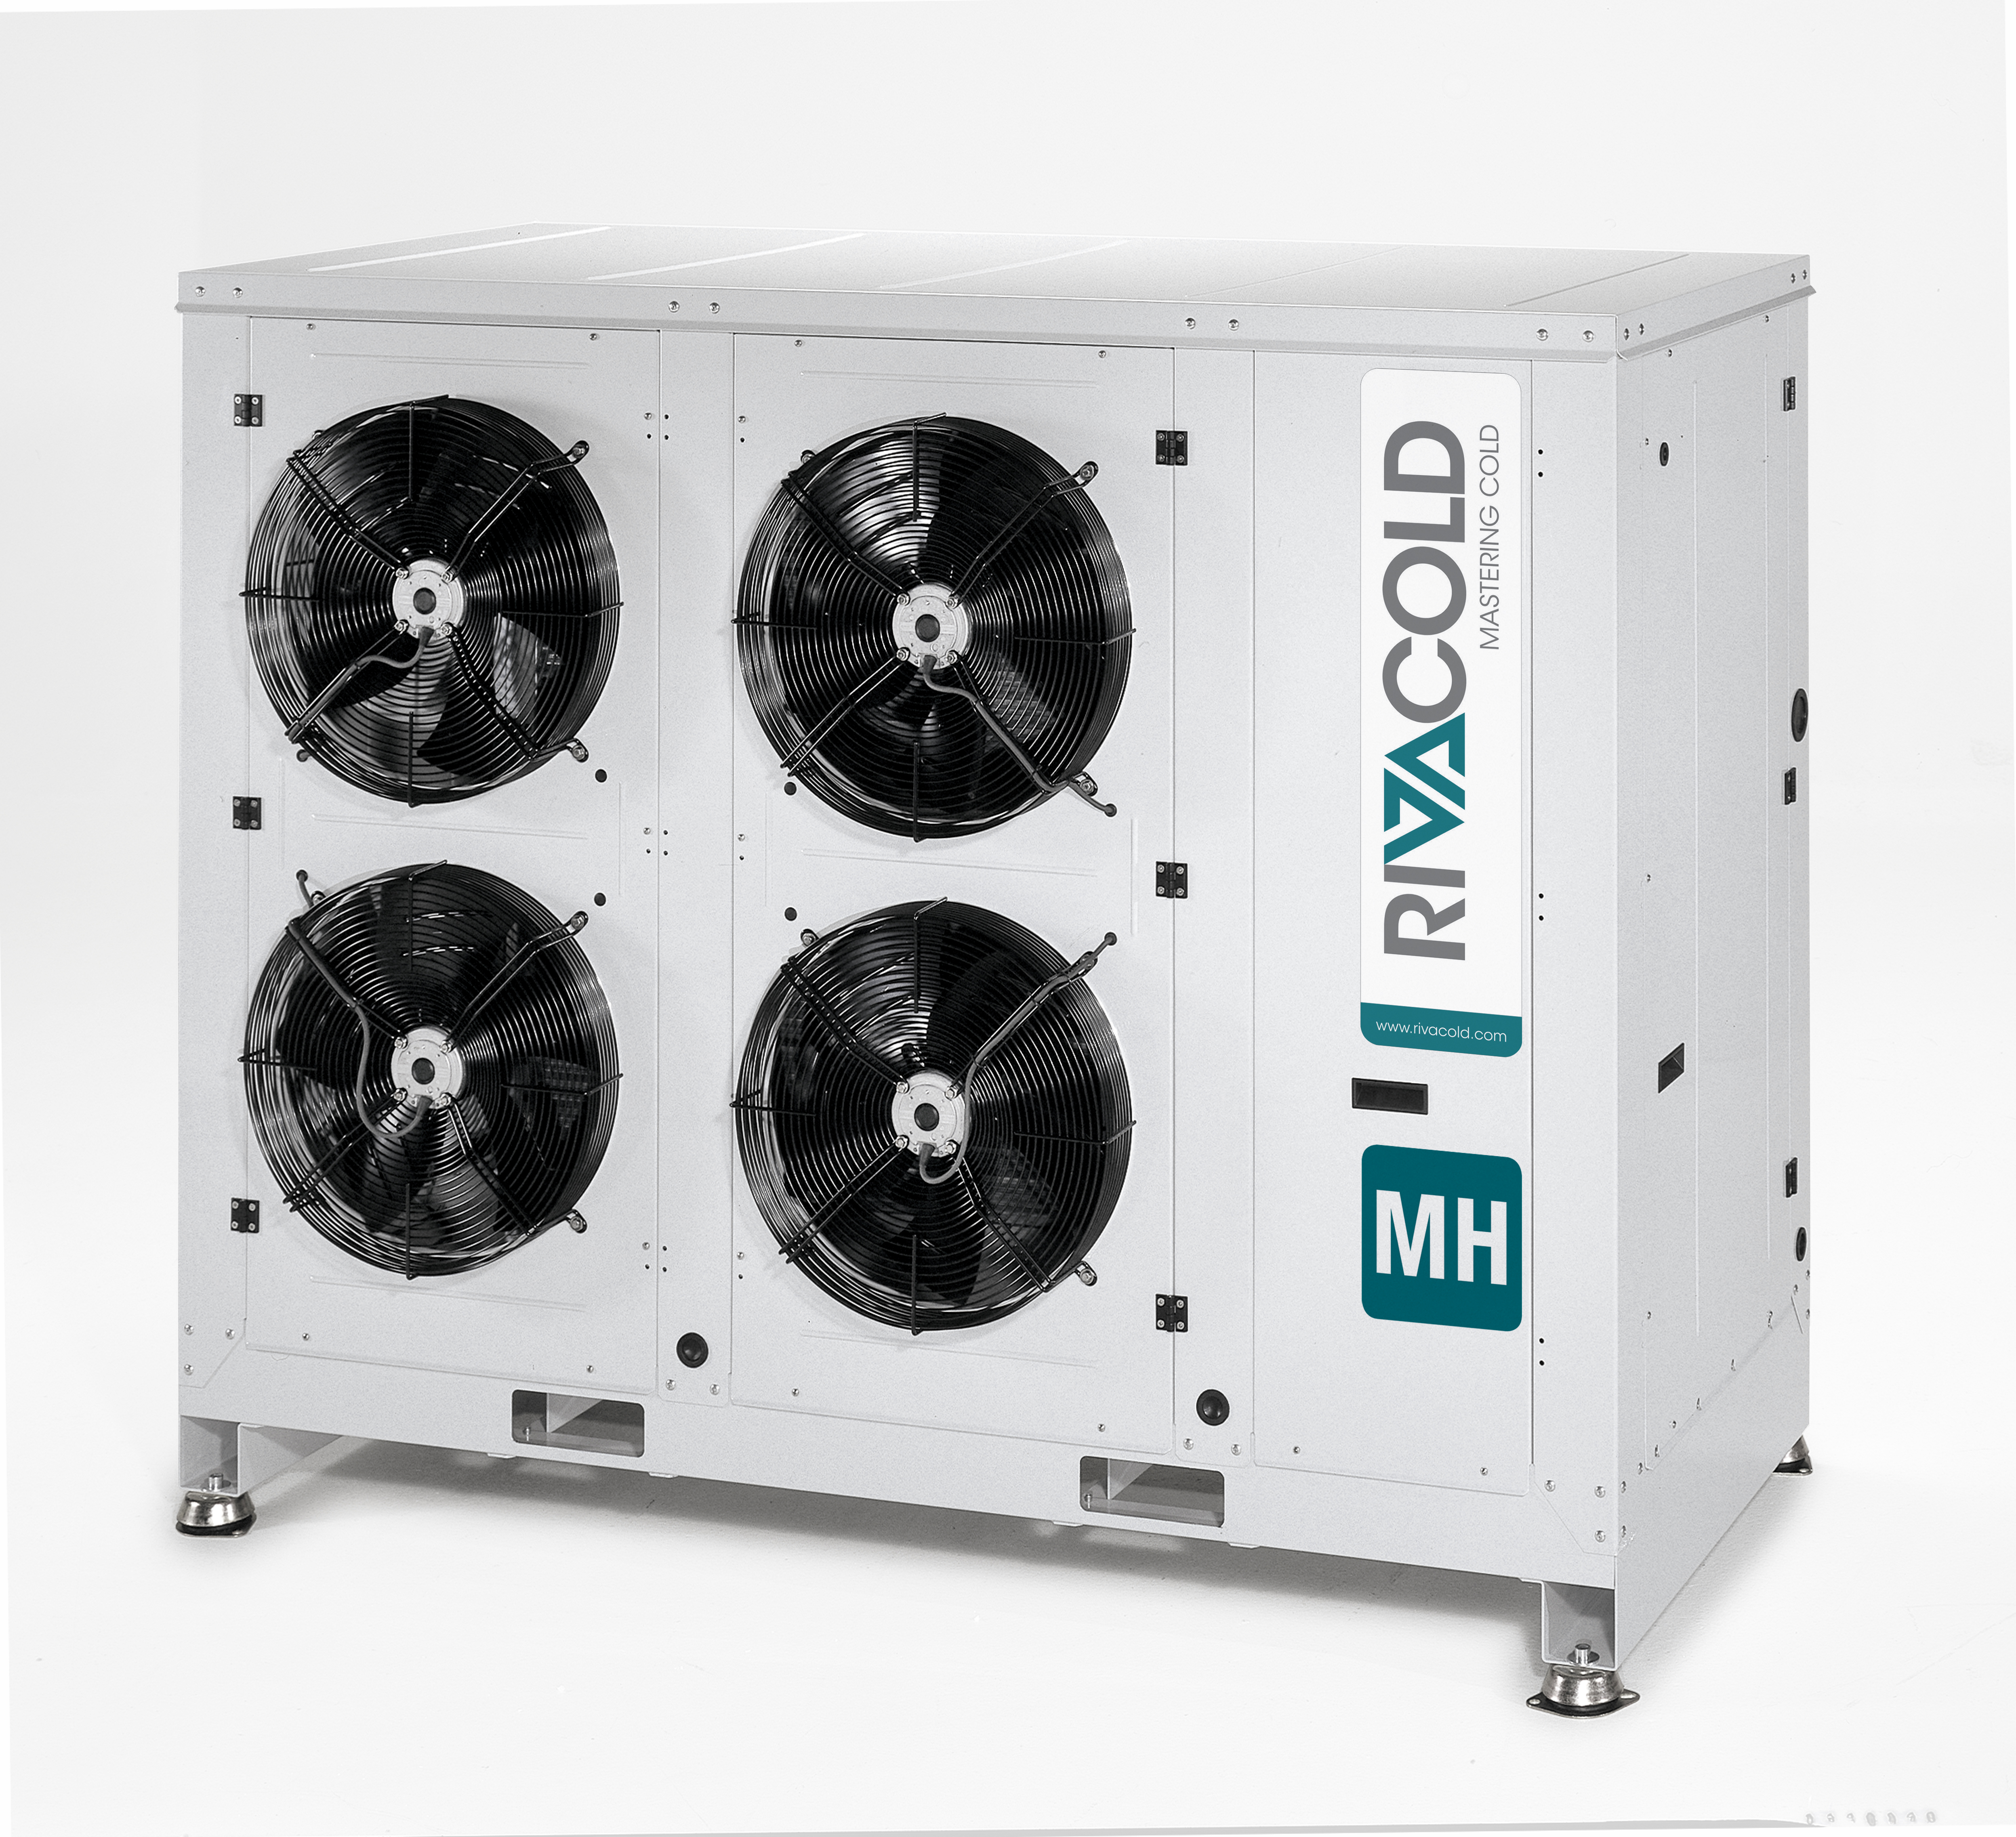 MH - unità condensatrici con carenatura insonorizzata e compressore alternativo, semiermetico e scroll